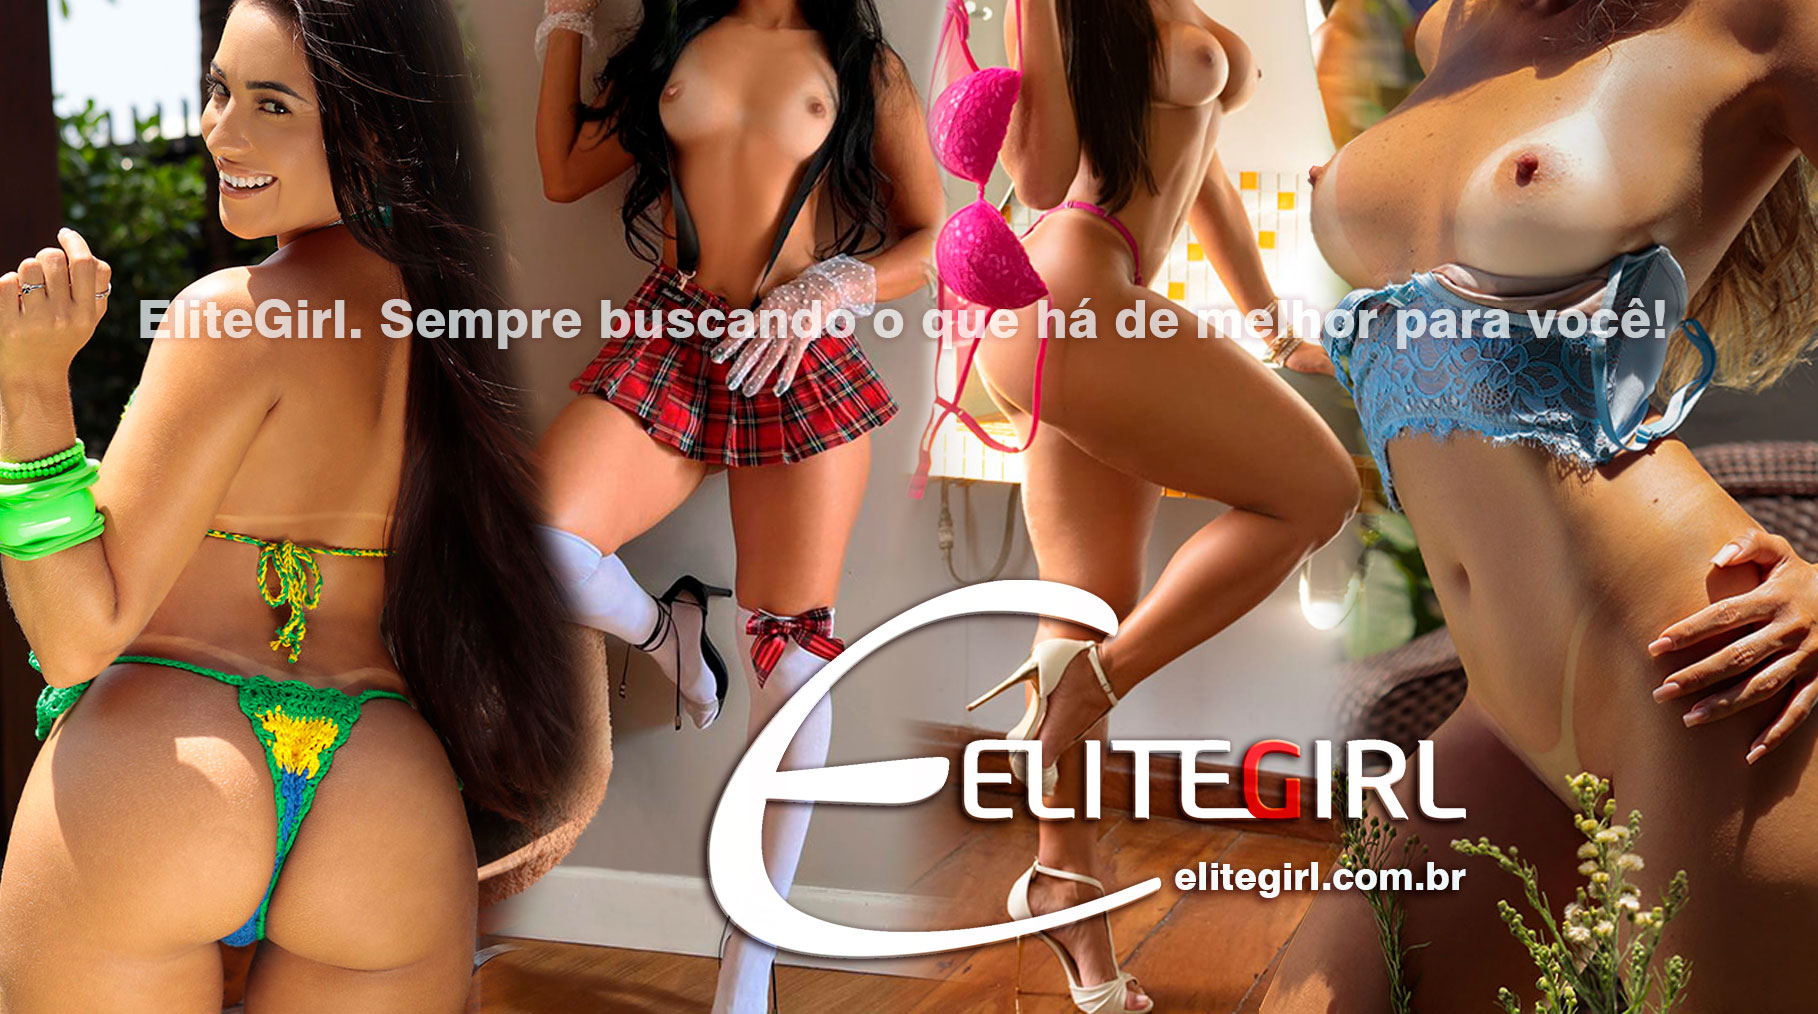 Catálogo da EliteGirl reúne as garotas mais cobiçadas pelos homens bem-sucedidos